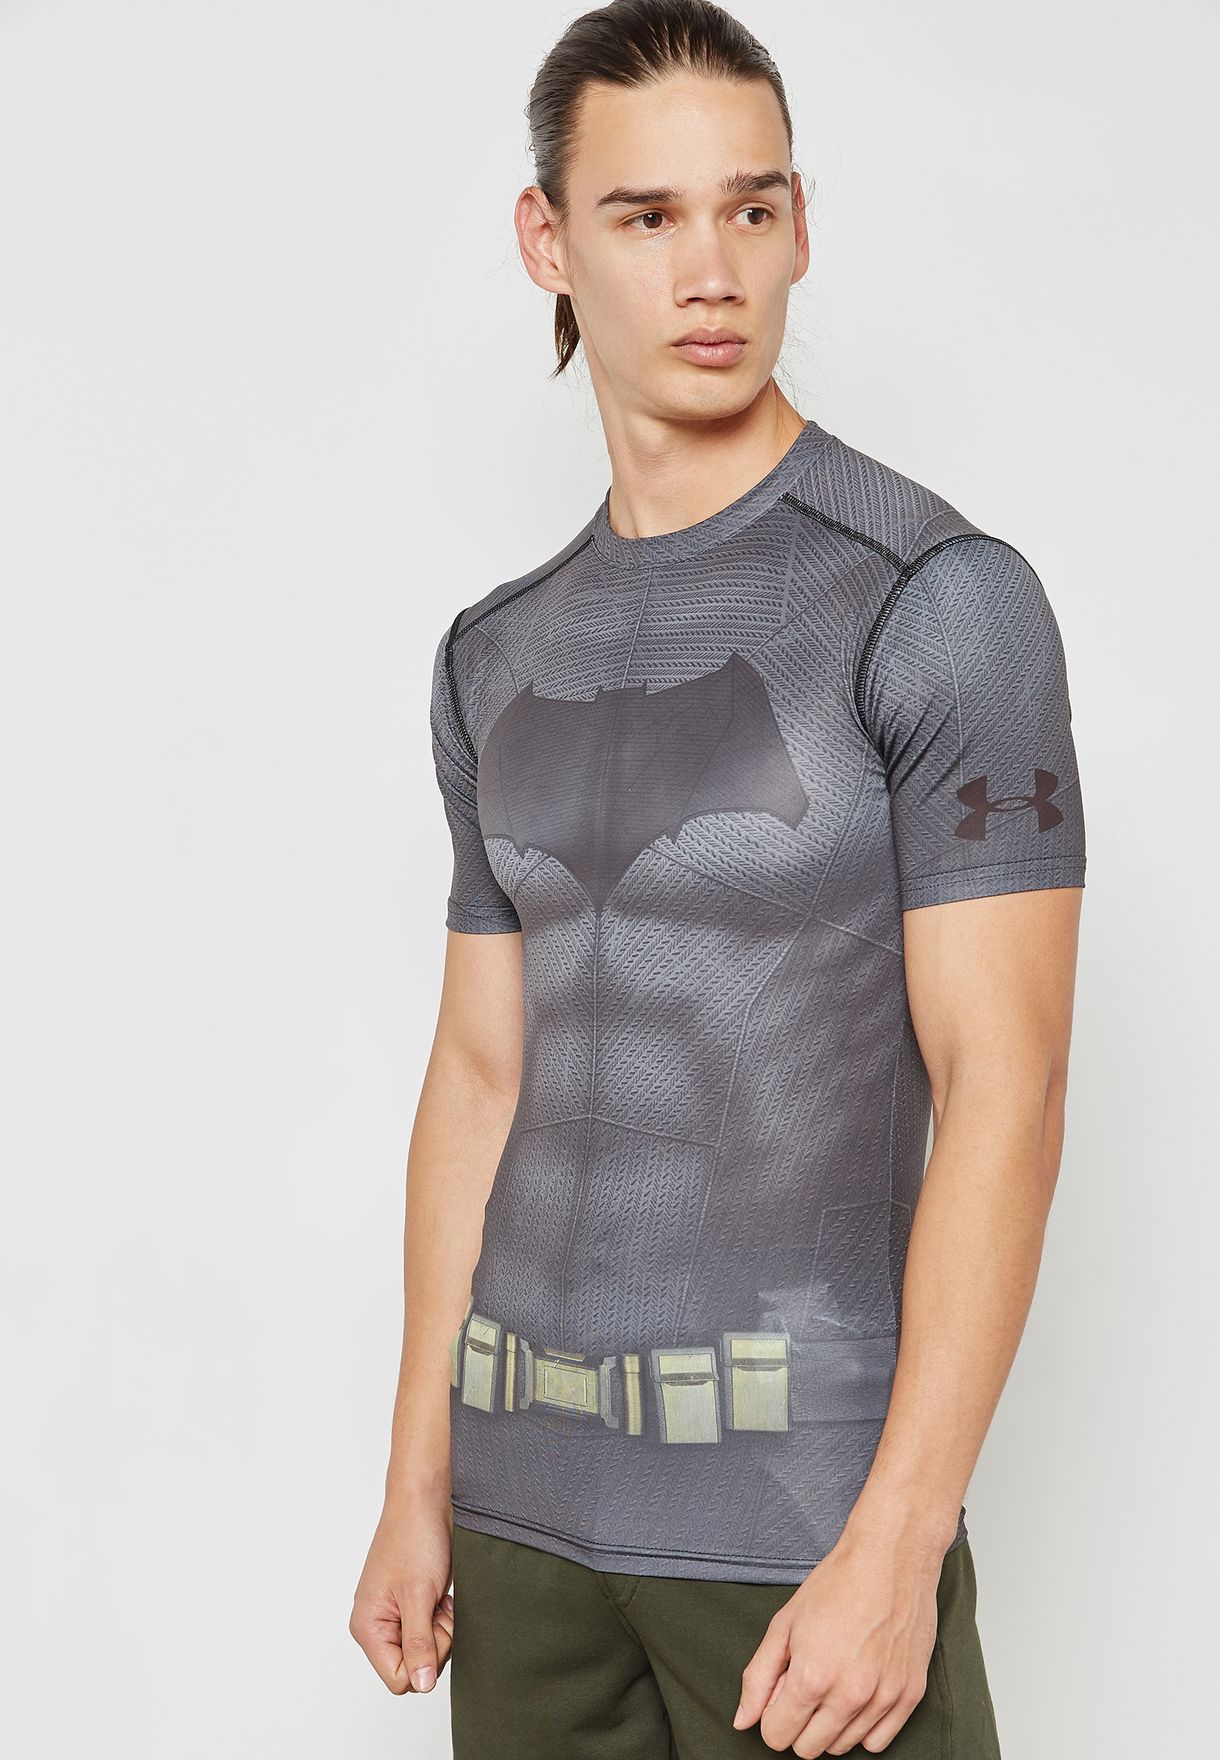 mal humor vergüenza Especialmente Buy Under Armour grey Batman Compression T-Shirt for Men in Riyadh, Jeddah